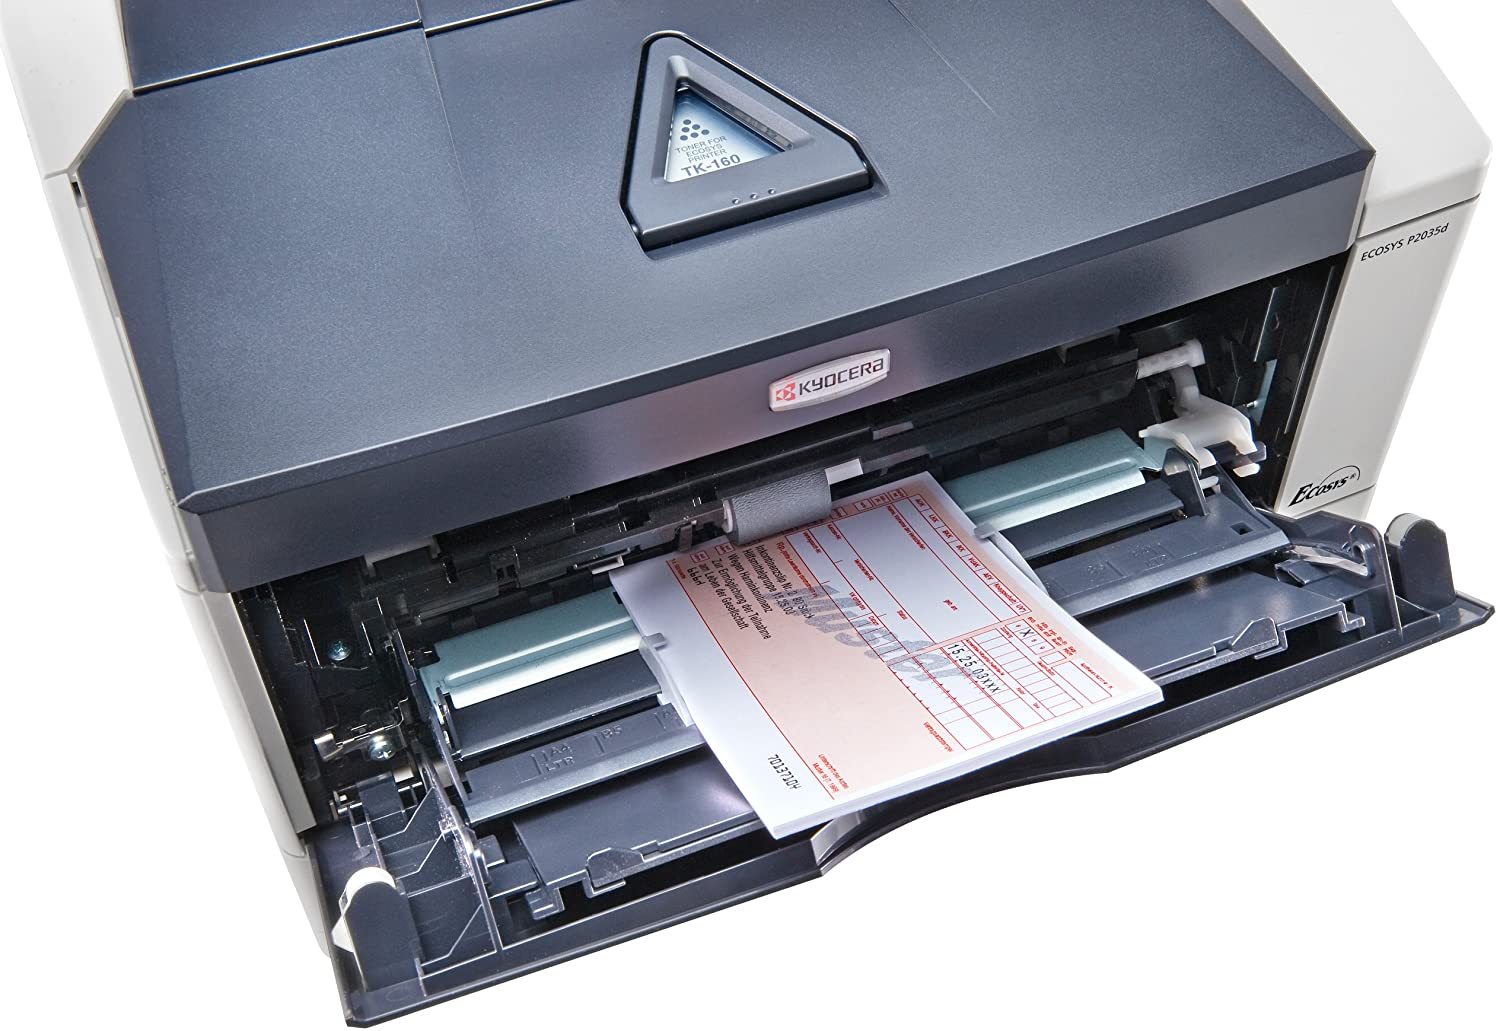 Kyocera Ecosys P2035d stampante monocromatica B/N 35ppm A4